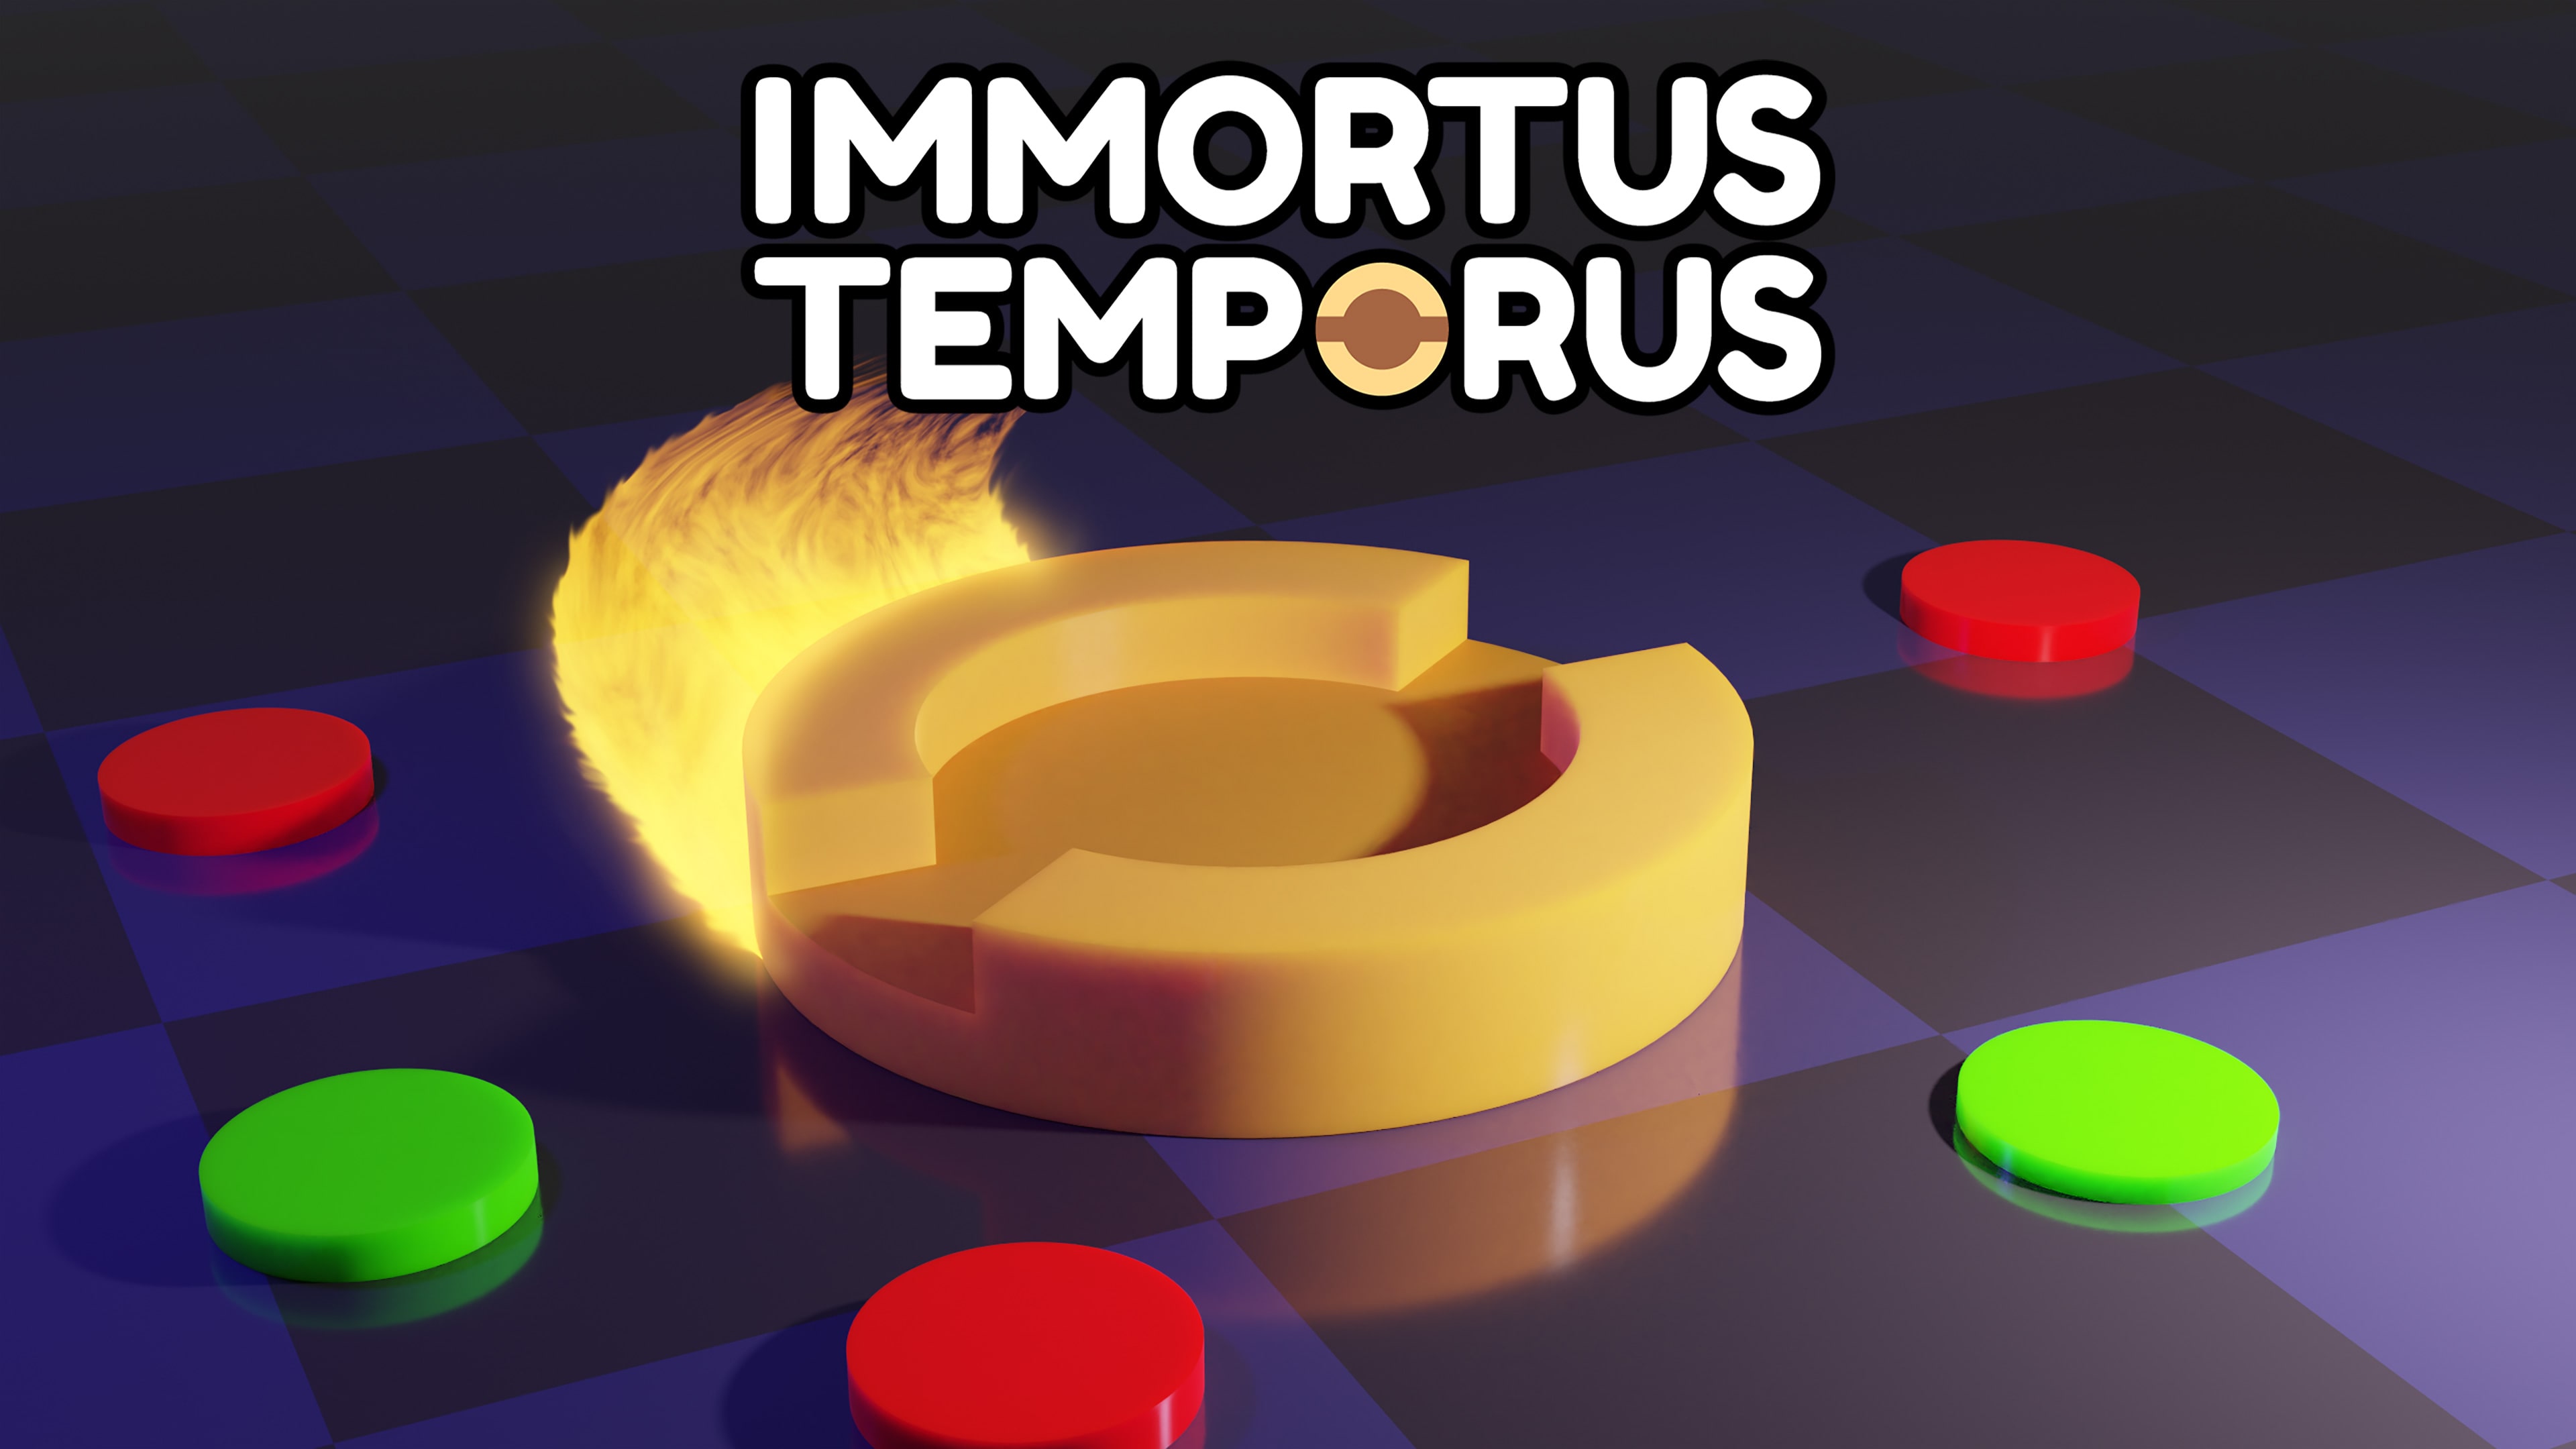 Immortus Temporus